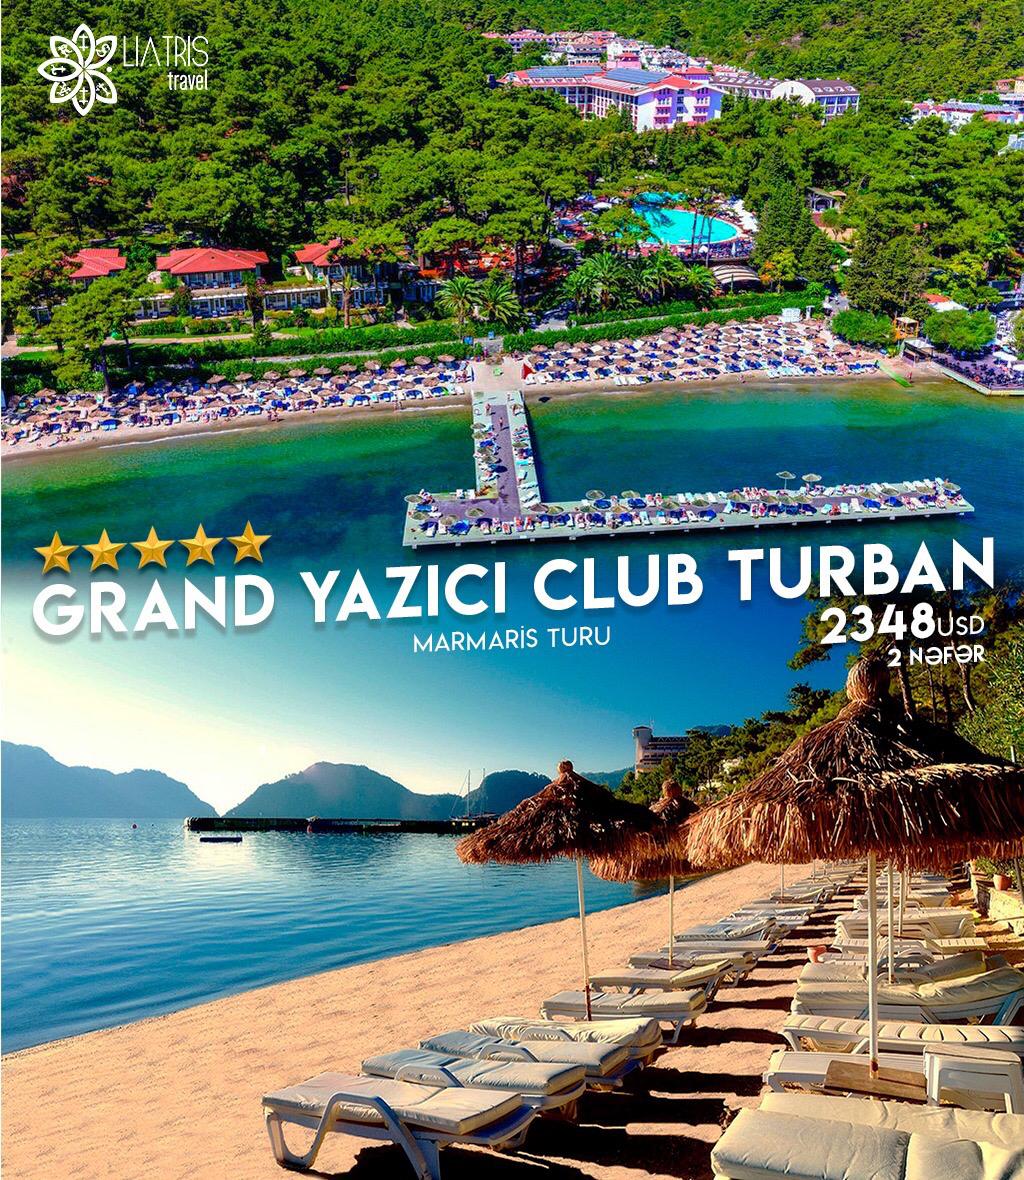 Marmarisin Luks oteli Grand Yazıcı Club turban 5*